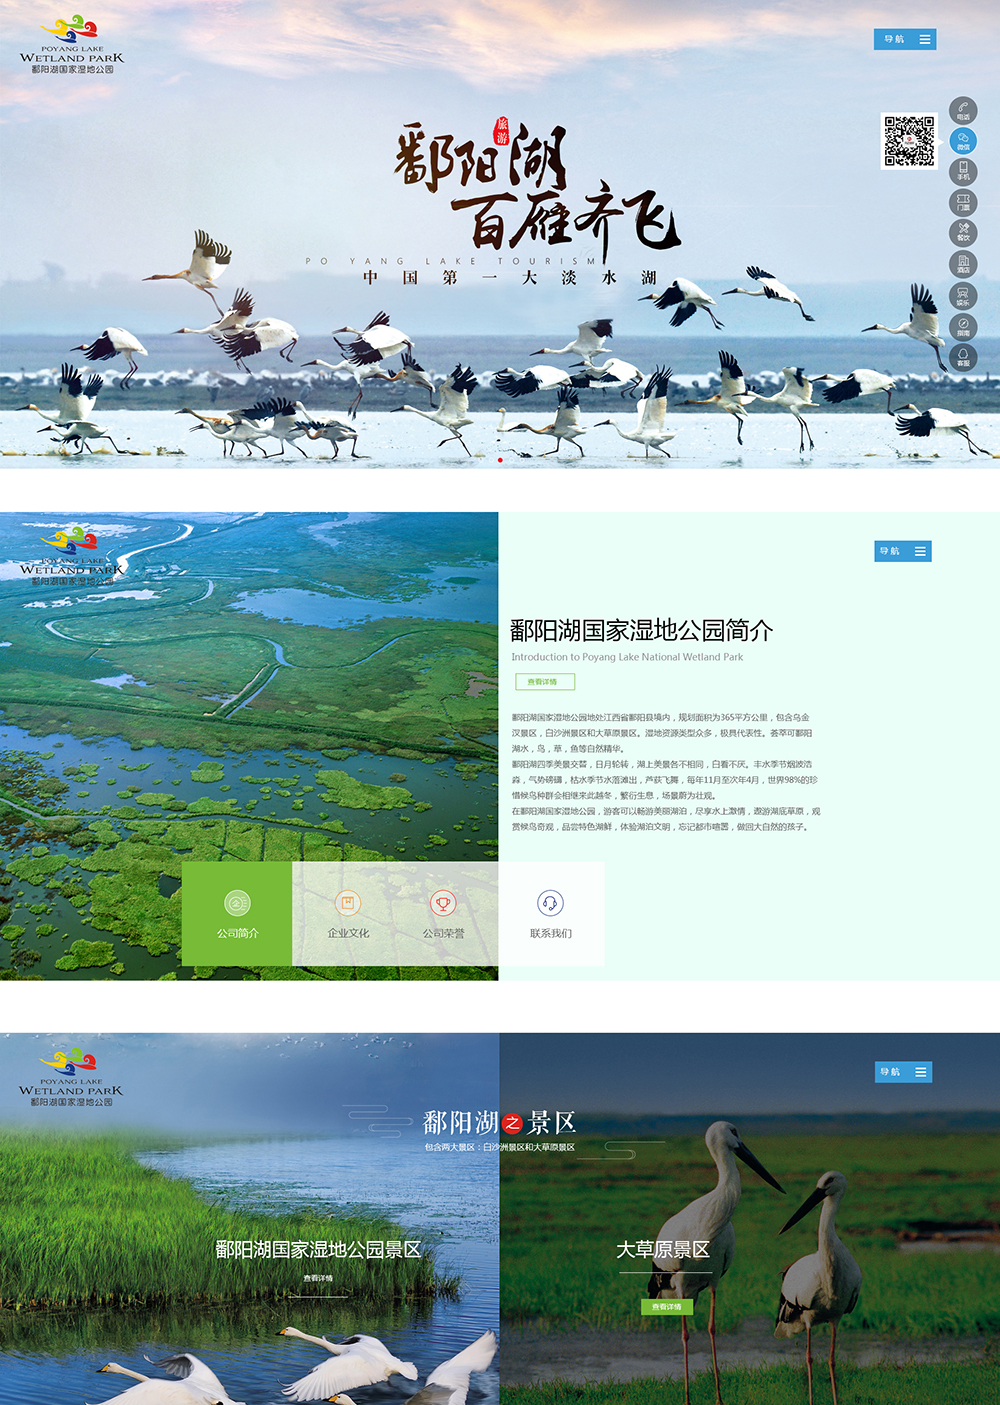 江西鄱陽湖濕地公園旅游開發有限公司_01.jpg